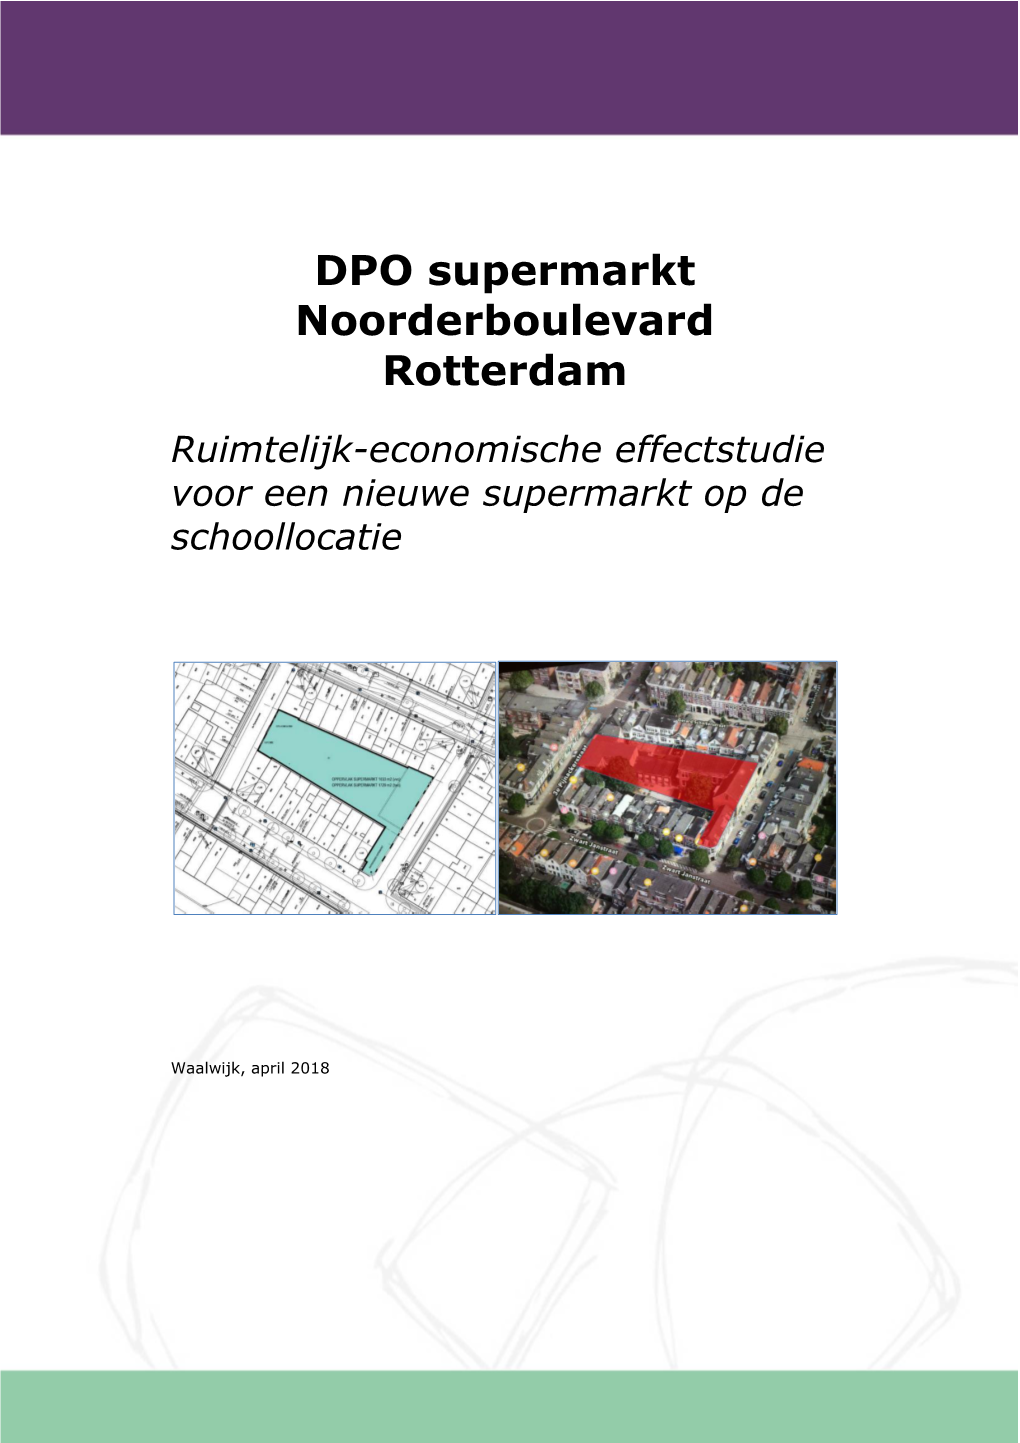 DPO Supermarkt Noorderboulevard Rotterdam